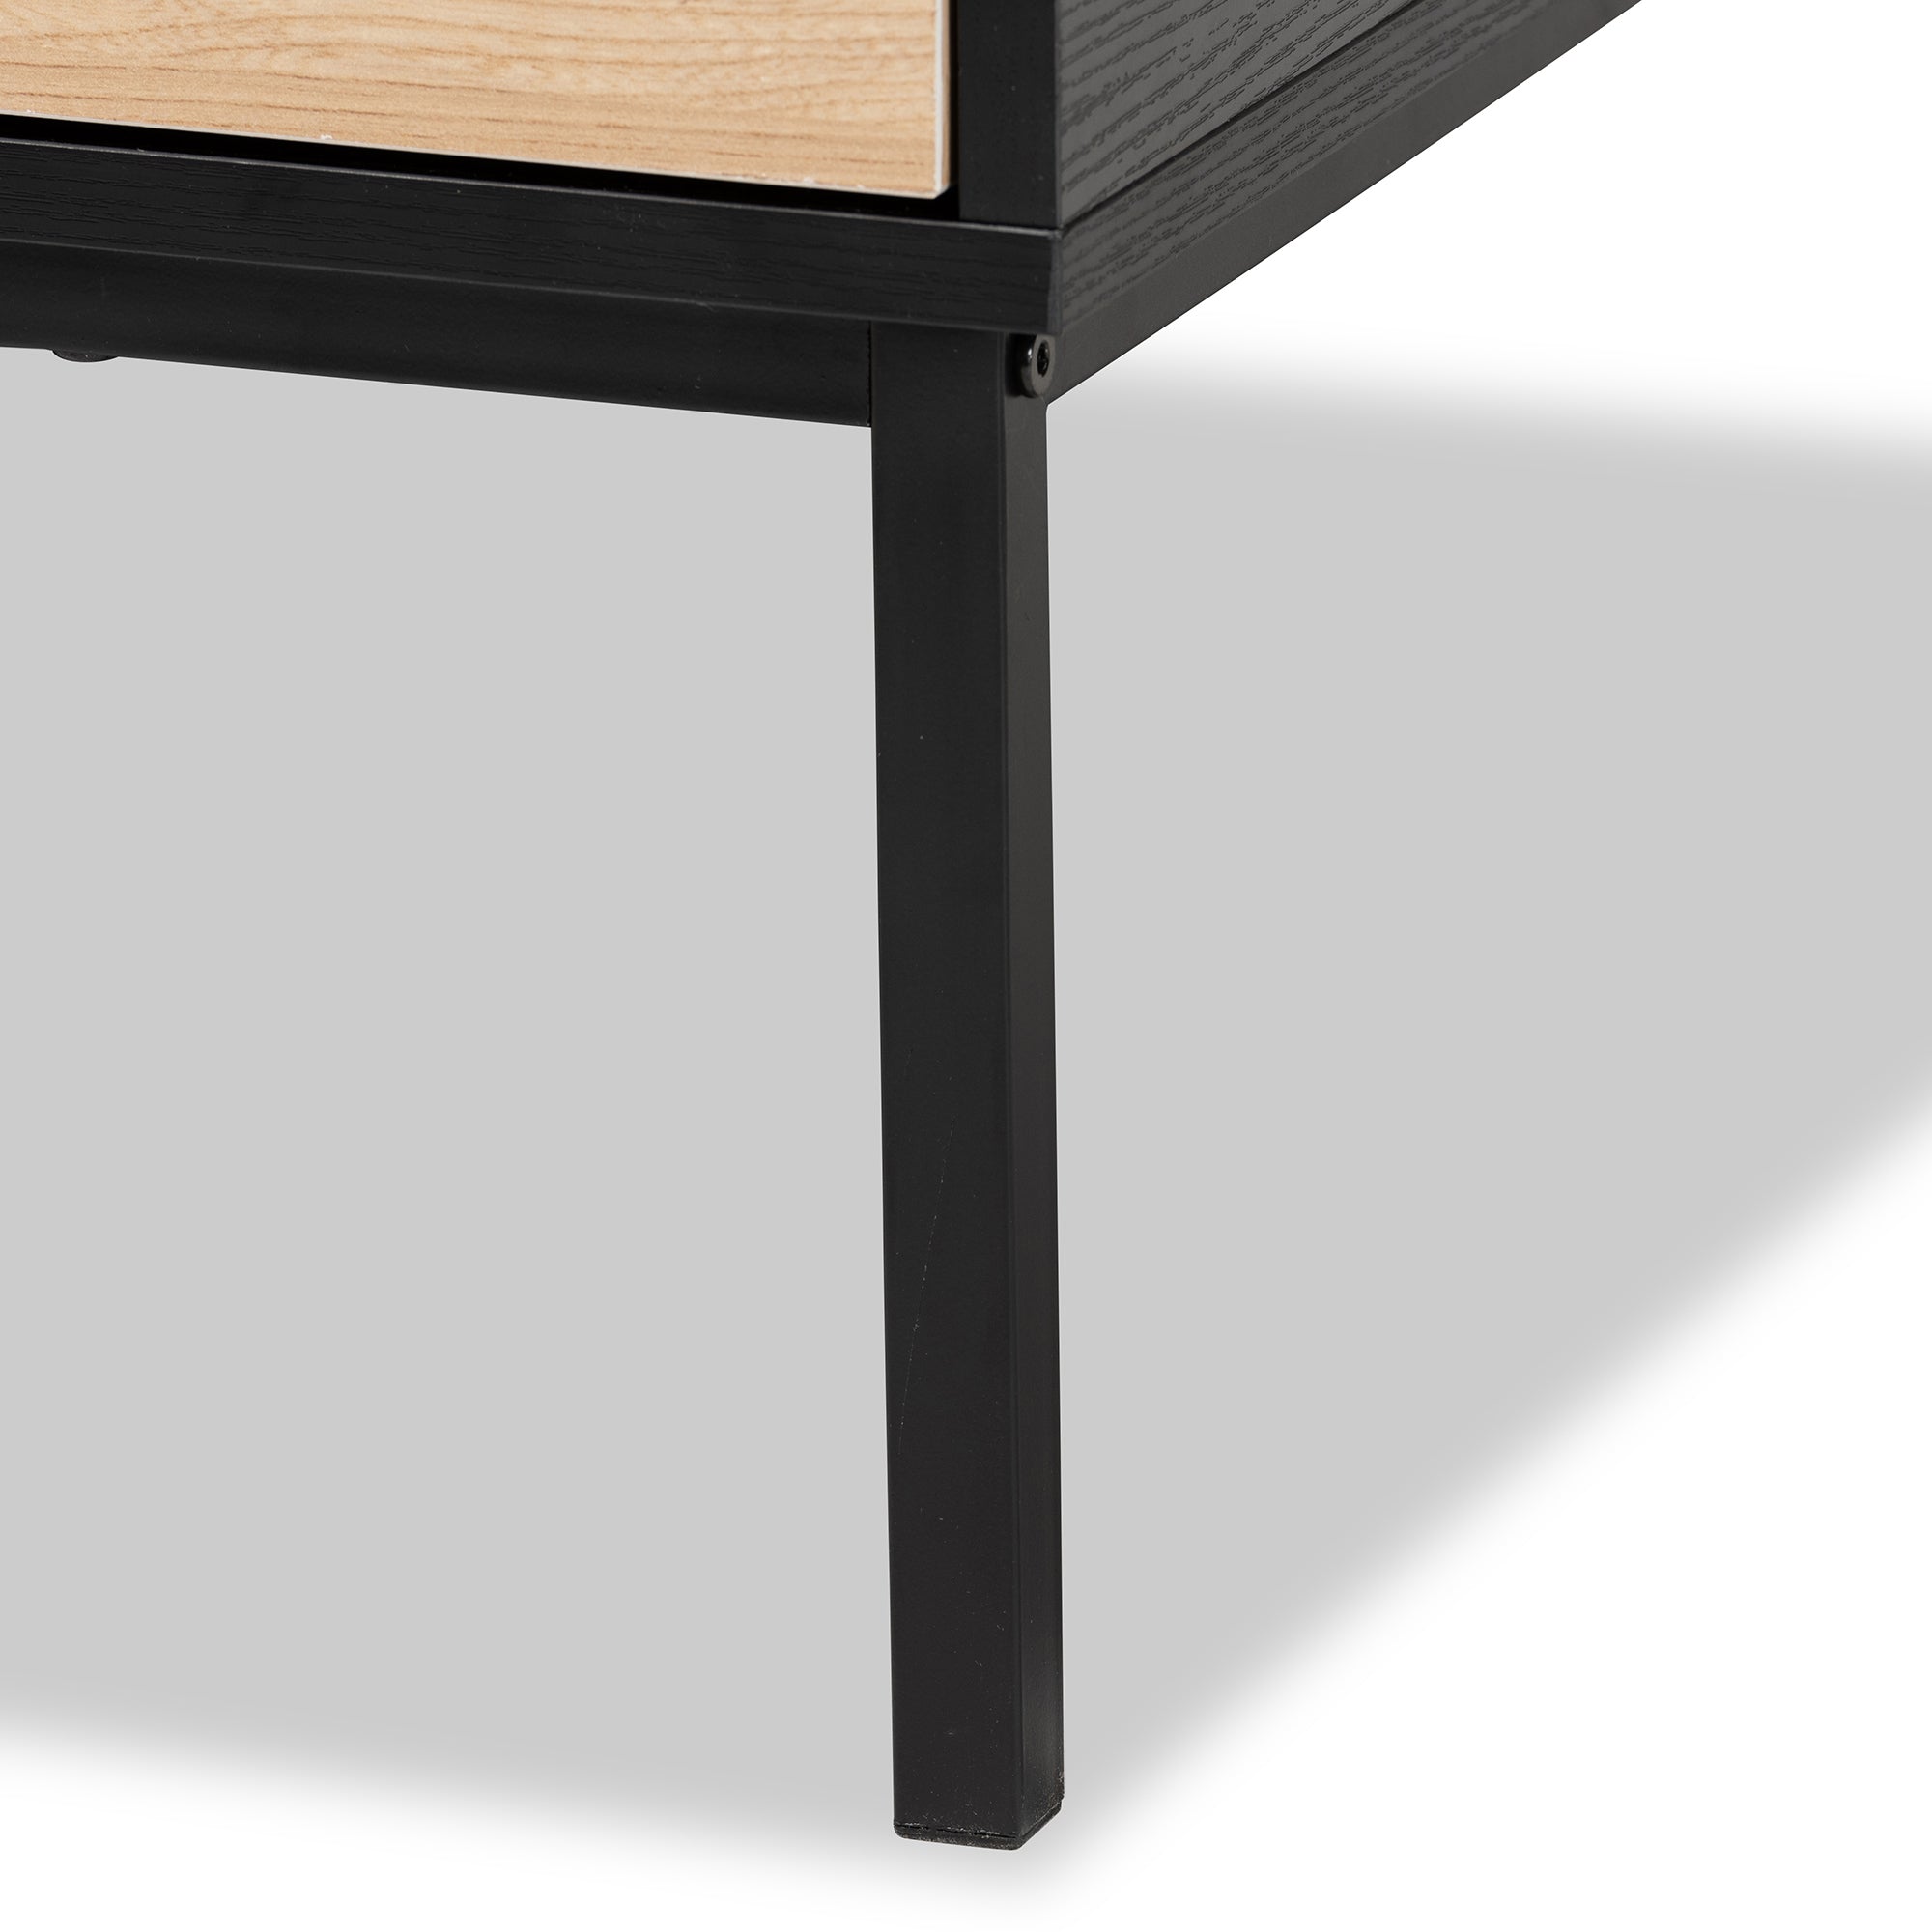 Haben Modern Coffee Table Two-Tone-Coffee Table-Baxton Studio - WI-Wall2Wall Furnishings